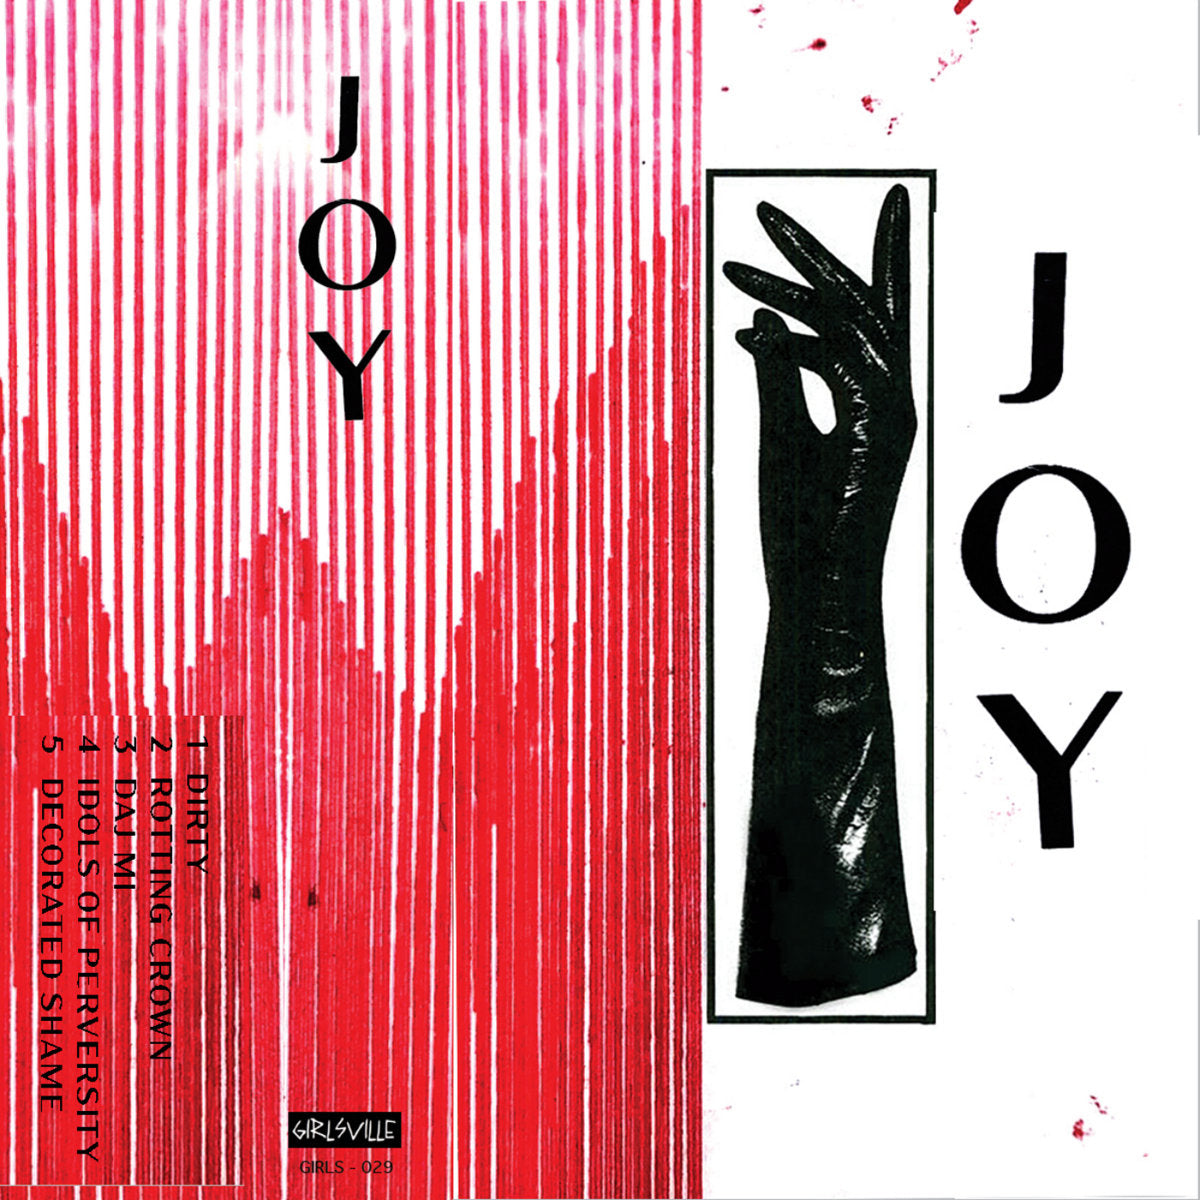 JOY "JOY" CS (2021)